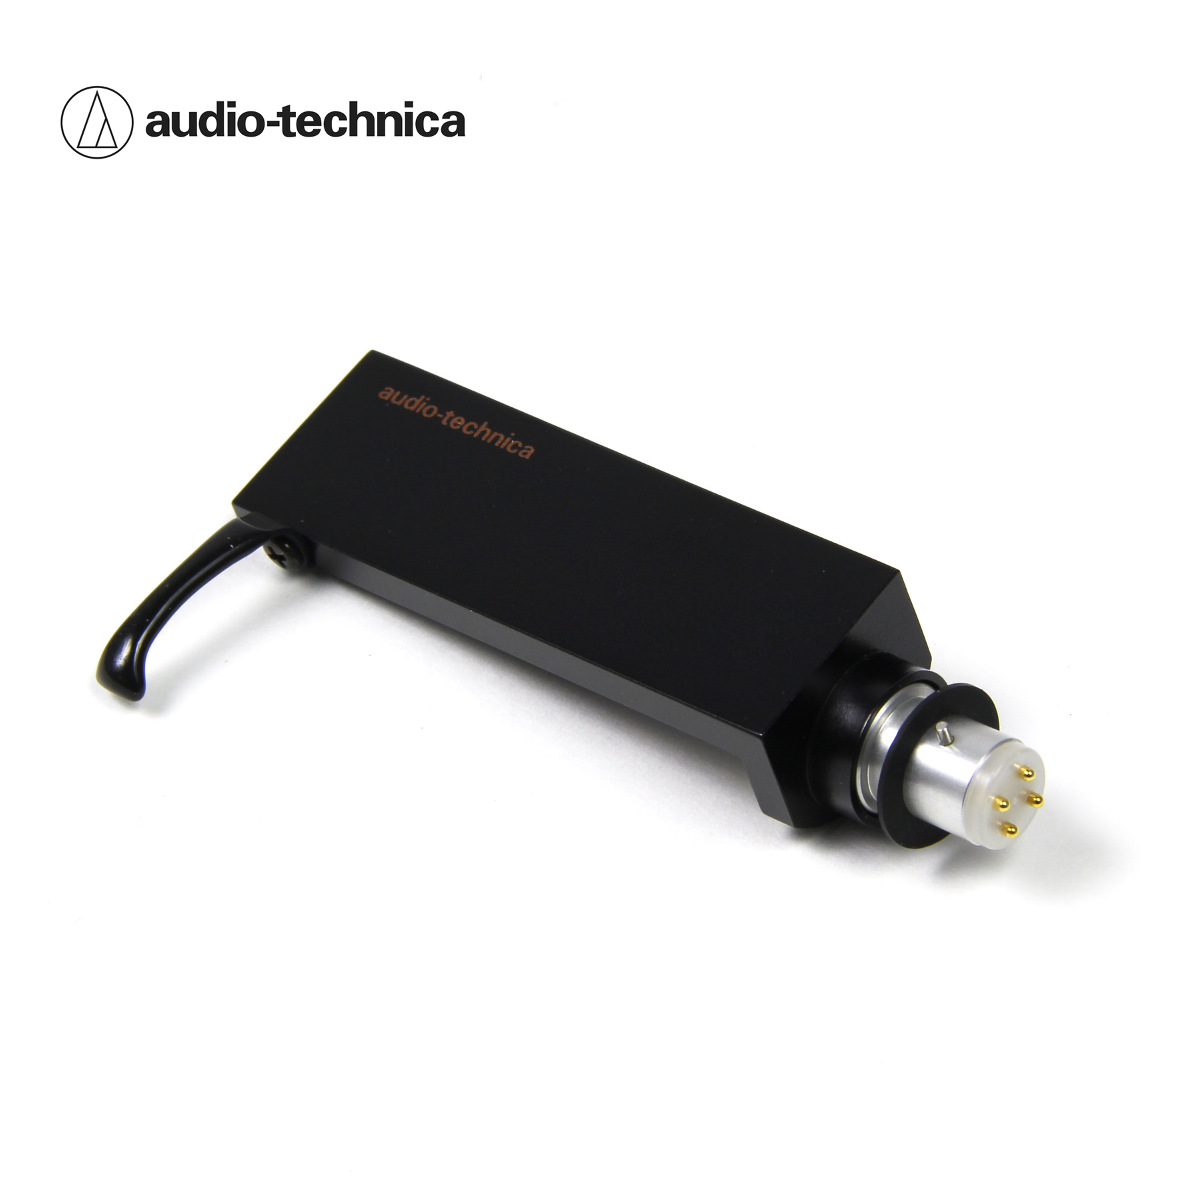 TESTINA E PUNTINA CONICA PROFESSIONALE PER GIRADISCHI AUDIO TECHNICA AT91 –  Firefly Audio